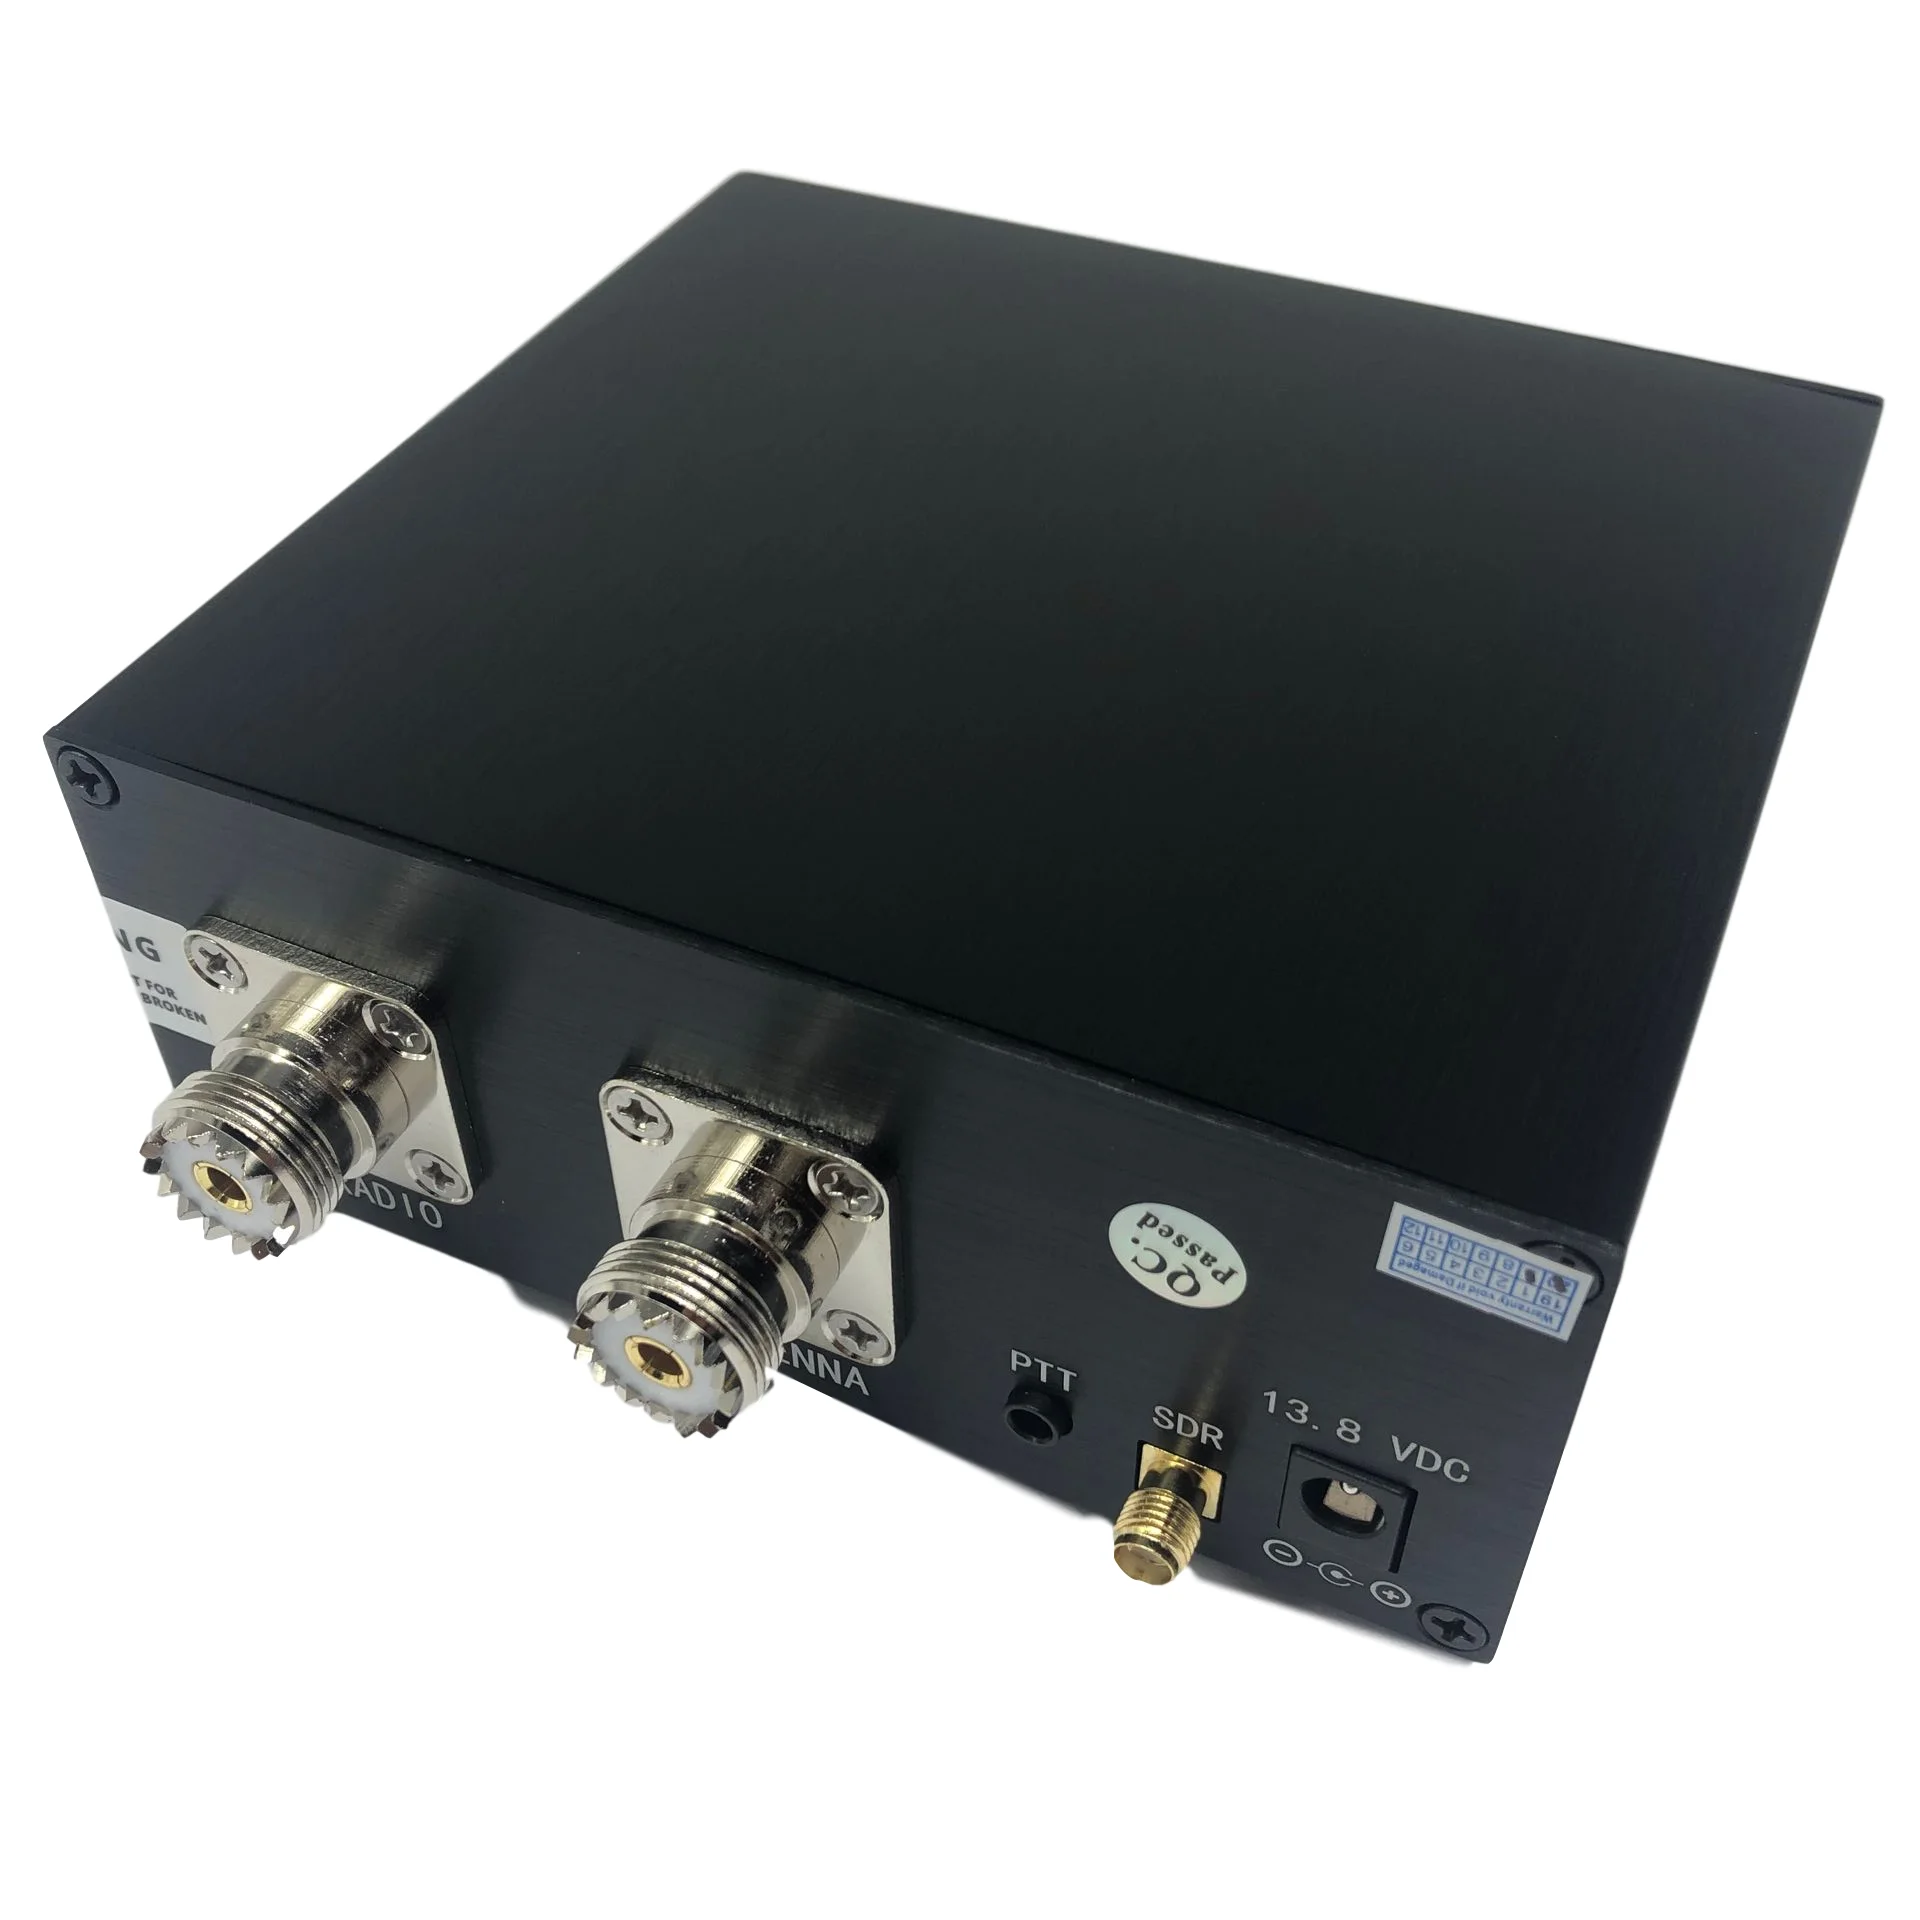 Envío gratis Transceptor SDR Interruptor de Antena Partícipe Dispositivo para Compartir 160MHz TR Caja del Interruptor 0